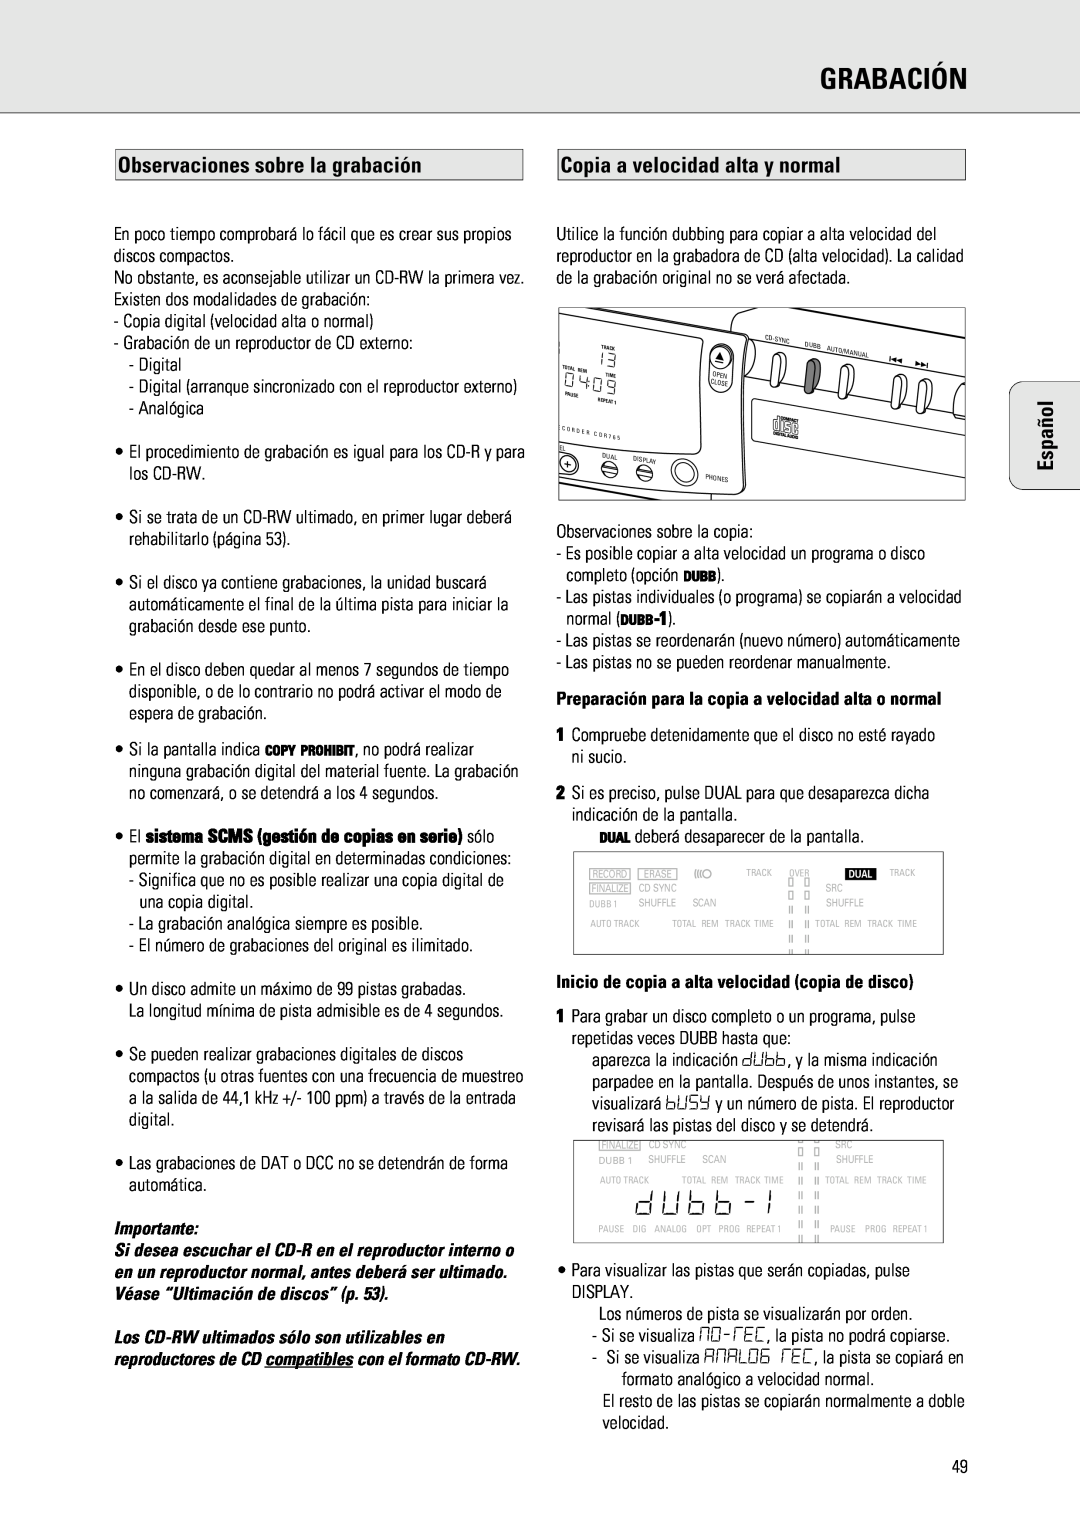 Philips 765 manual Grabación, Observaciones sobre la grabación, Copia a velocidad alta y normal, Importante, Español 